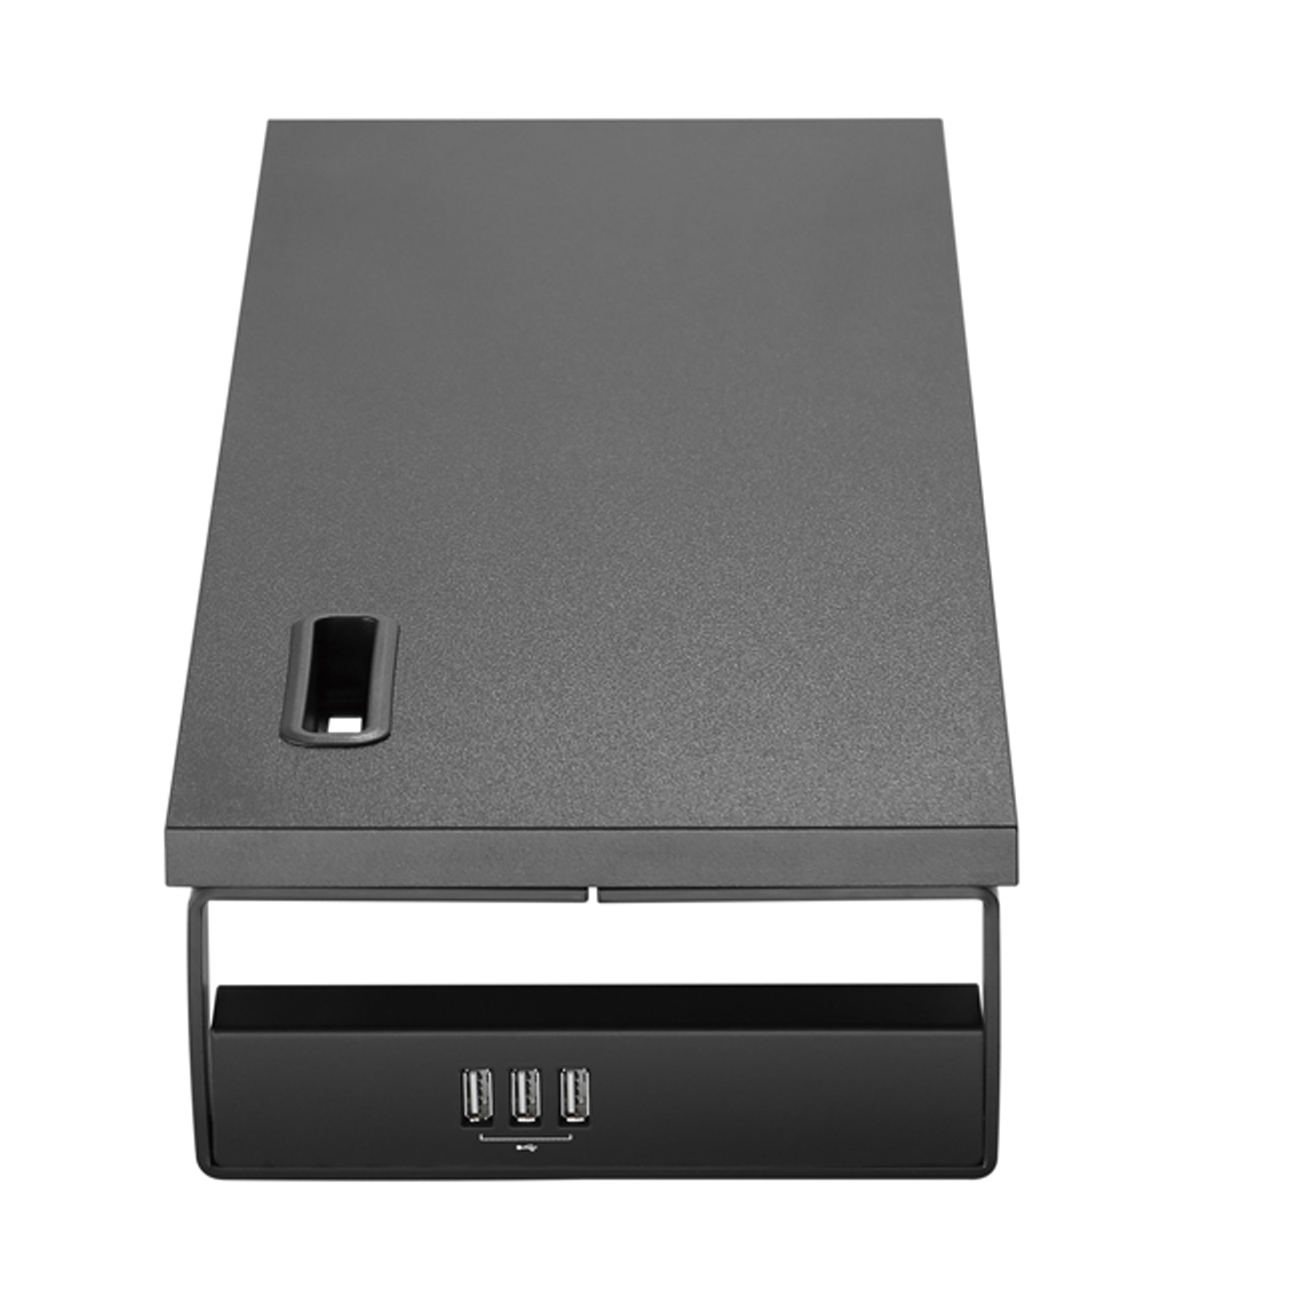 Equip Monitortischerhöhung bis 15kg mit 3x USB2.0 Ports sw